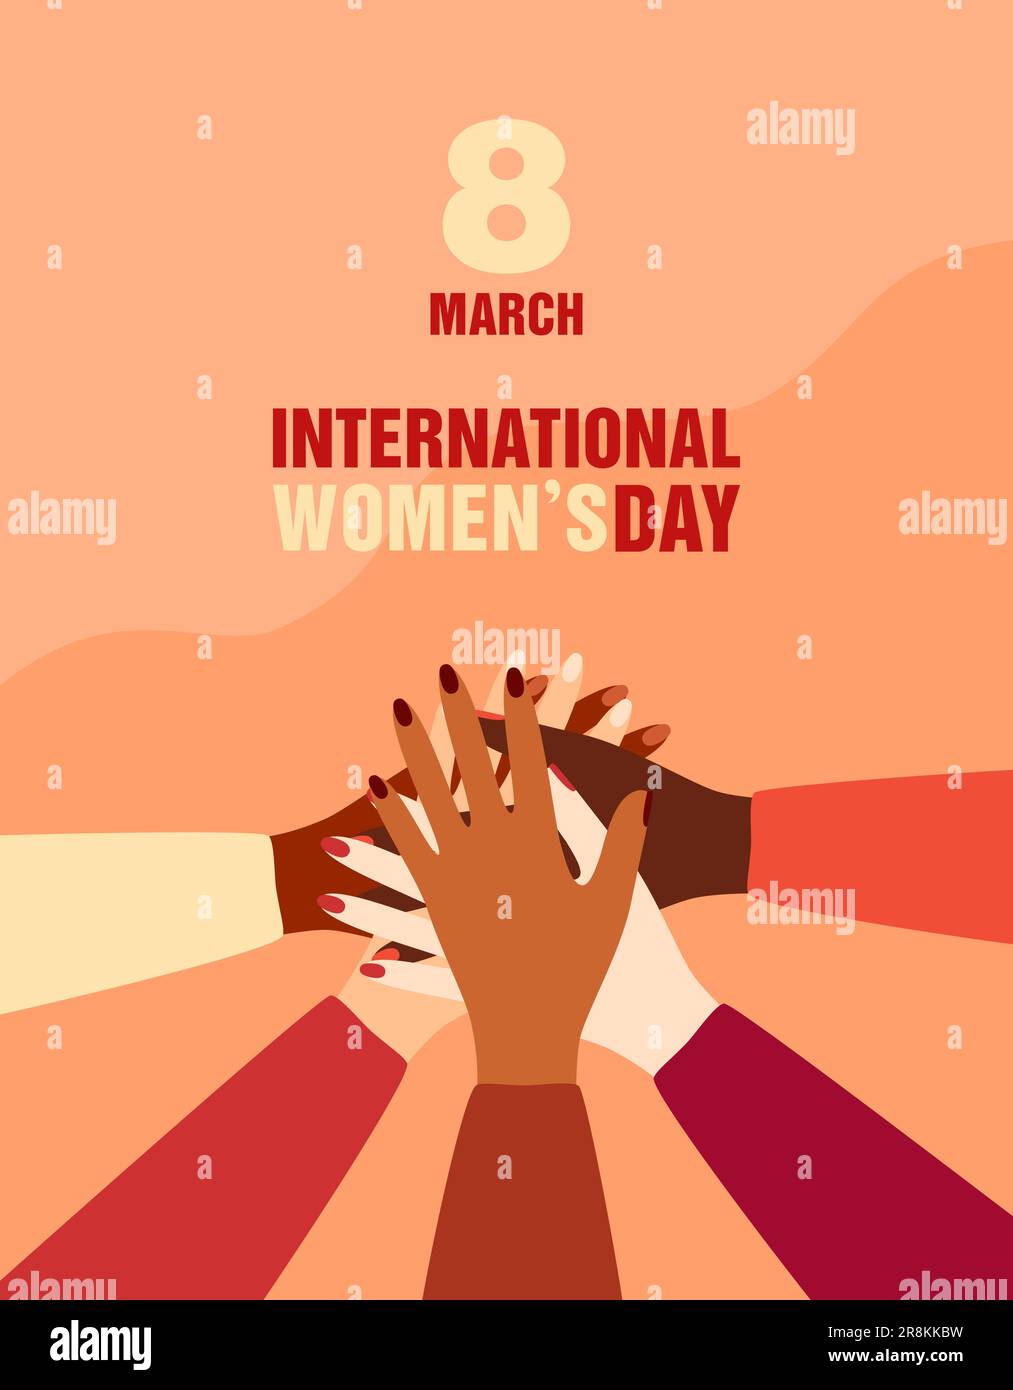 Poster zum Internationalen Frauentag. Frauen unterschiedlicher ethnischer Herkunft, die ihre Hände in Einheitsgesten zusammenlegen. Abbildung eines flachen Vektors Stock Vektor